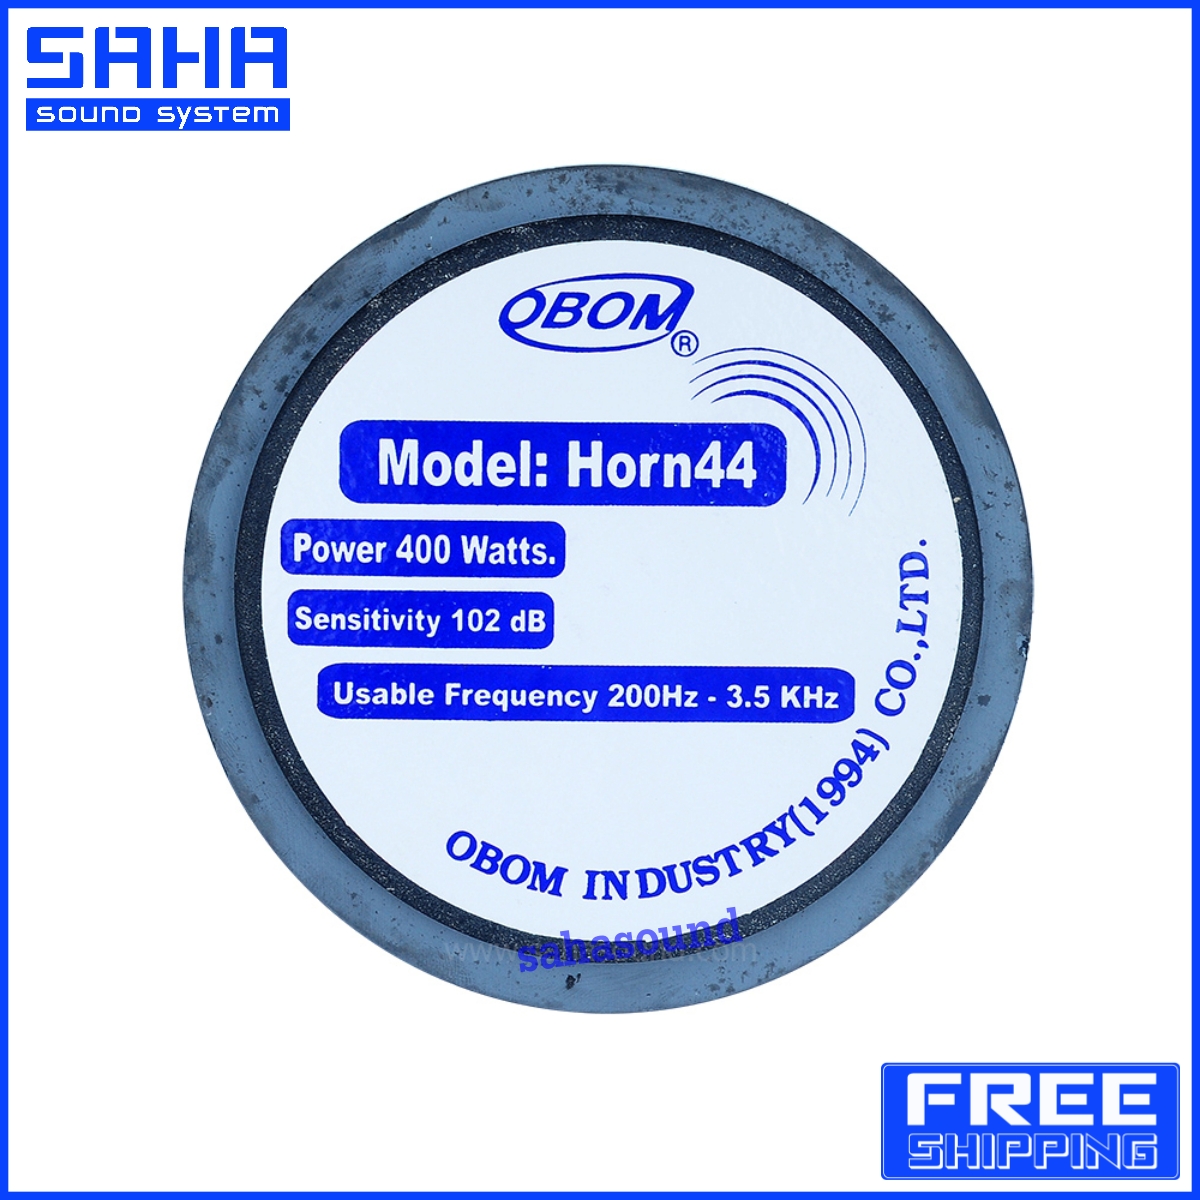 ส่งฟรี OBOM - HORN44 ยูนิตฮอร์น (ส่งฟรีไม่มีขั้นต่ำ!) sahasound - สหซาวด์